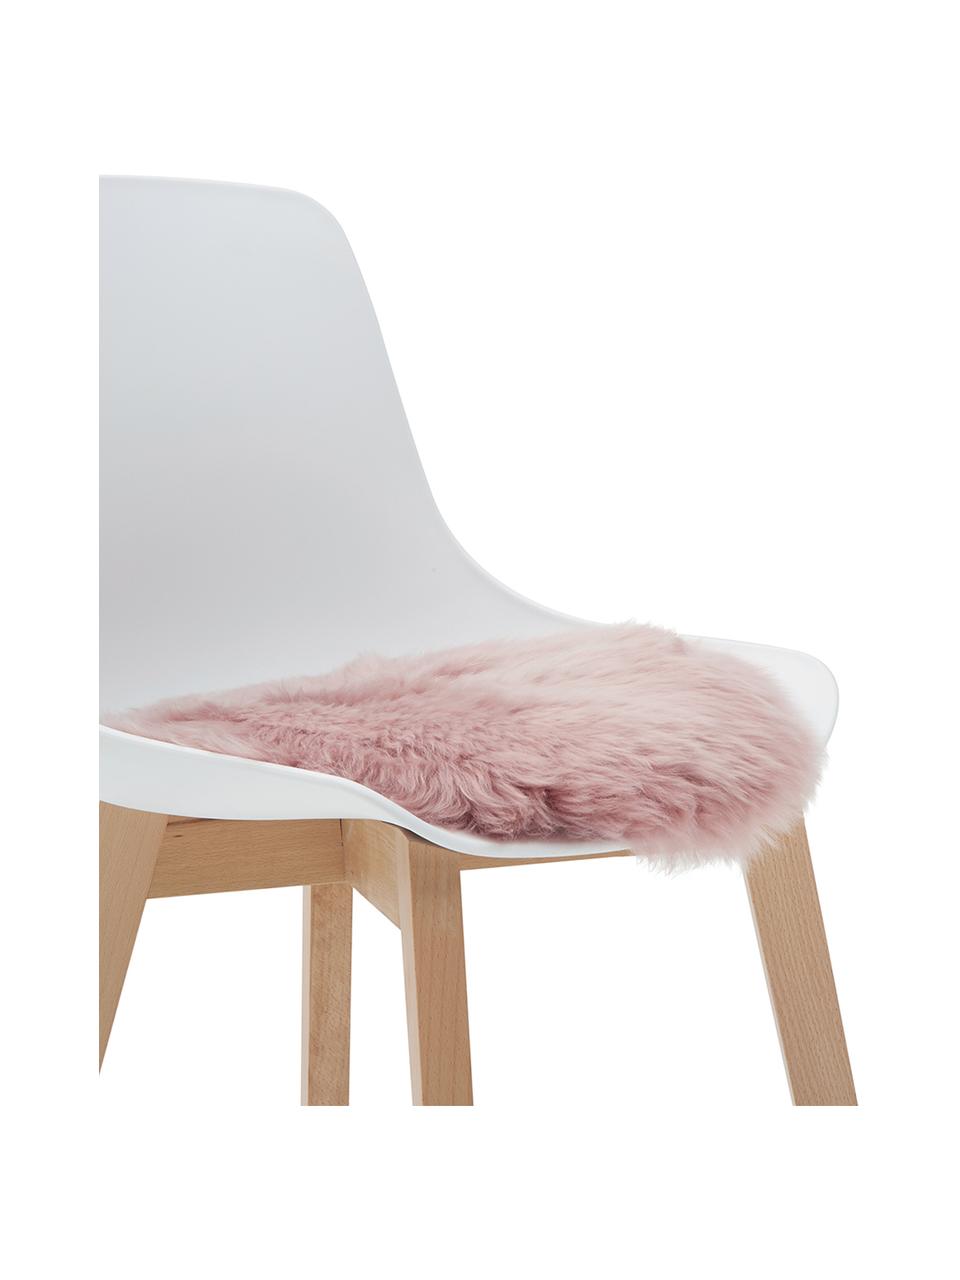 Okrągła nakładka na krzesło ze skóry owczej Oslo, proste włosie, Blady różowy, Ø 37 cm